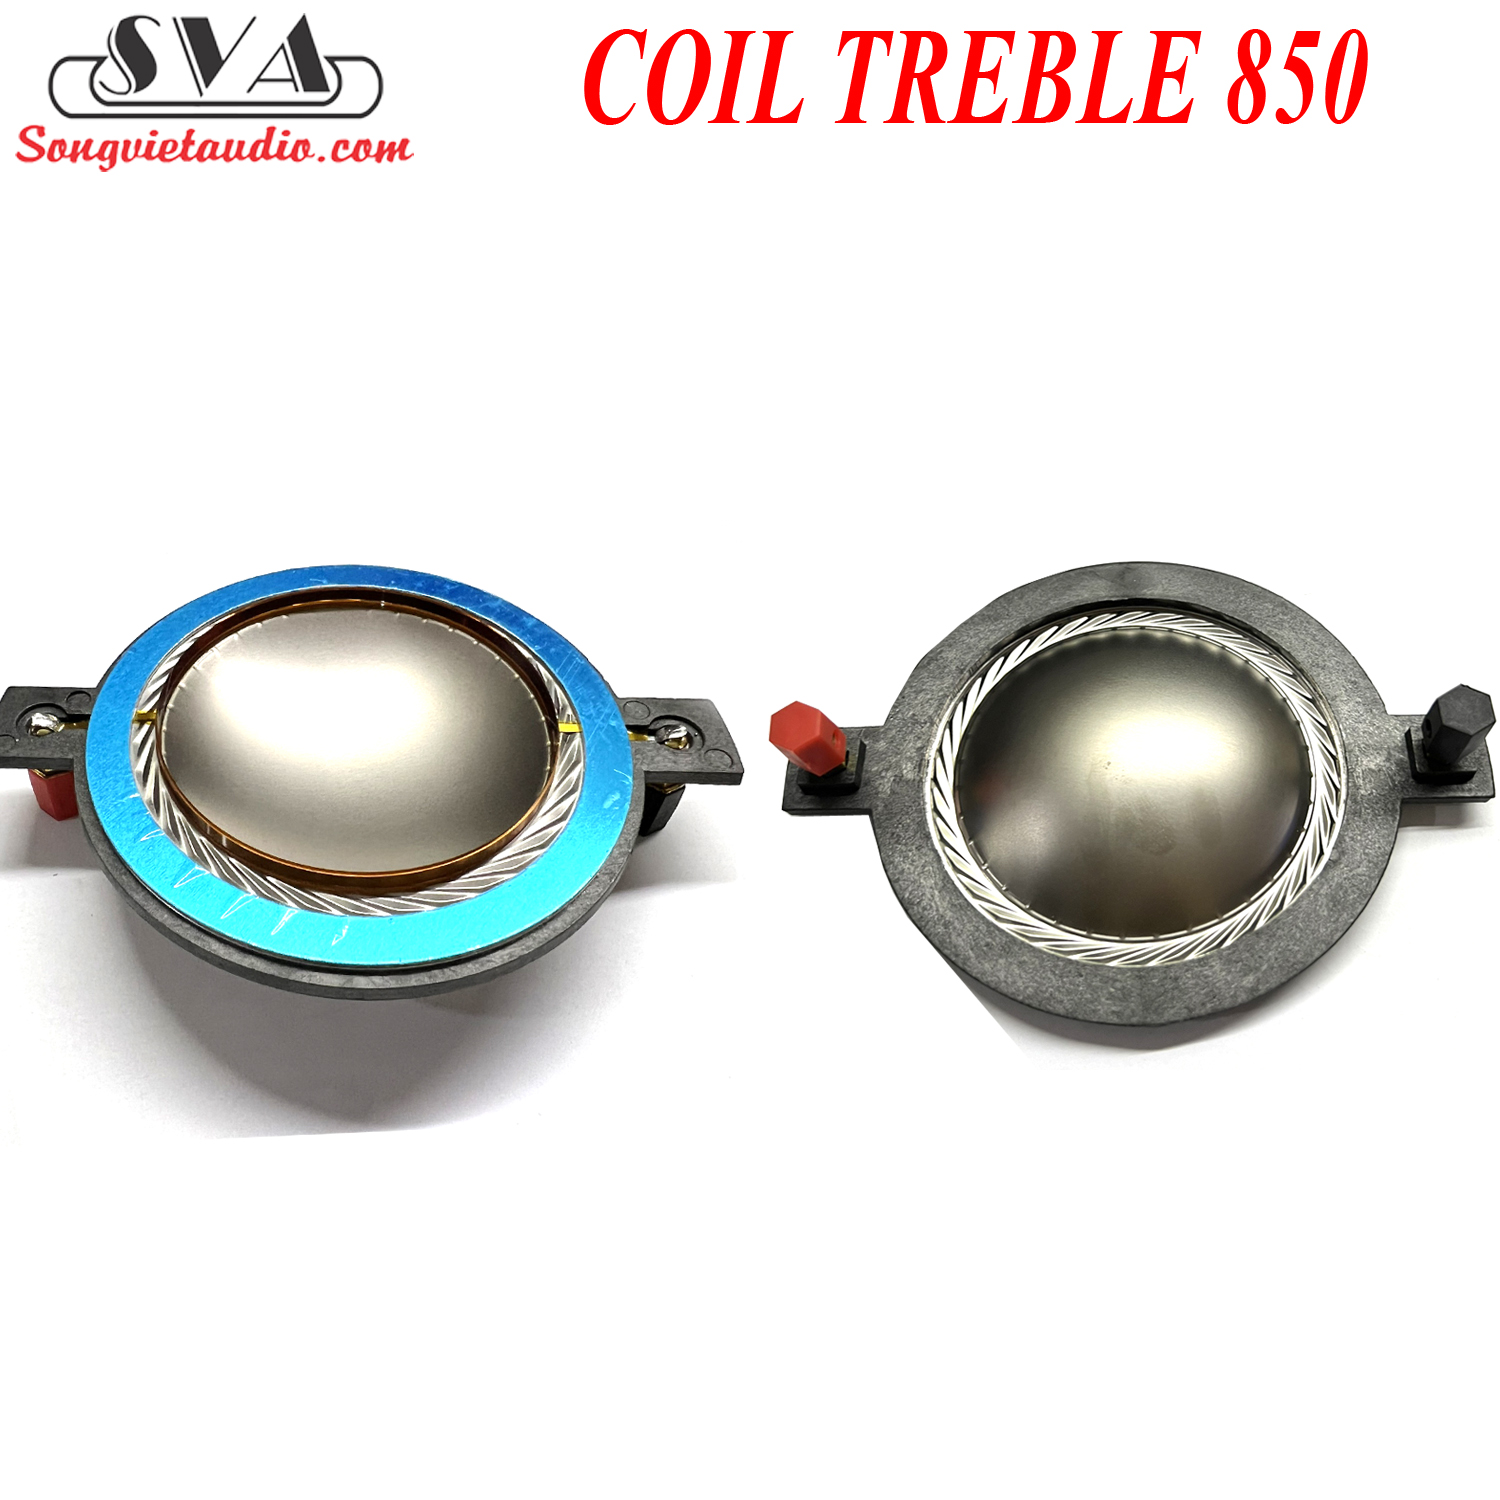 COIL TREBLE 850